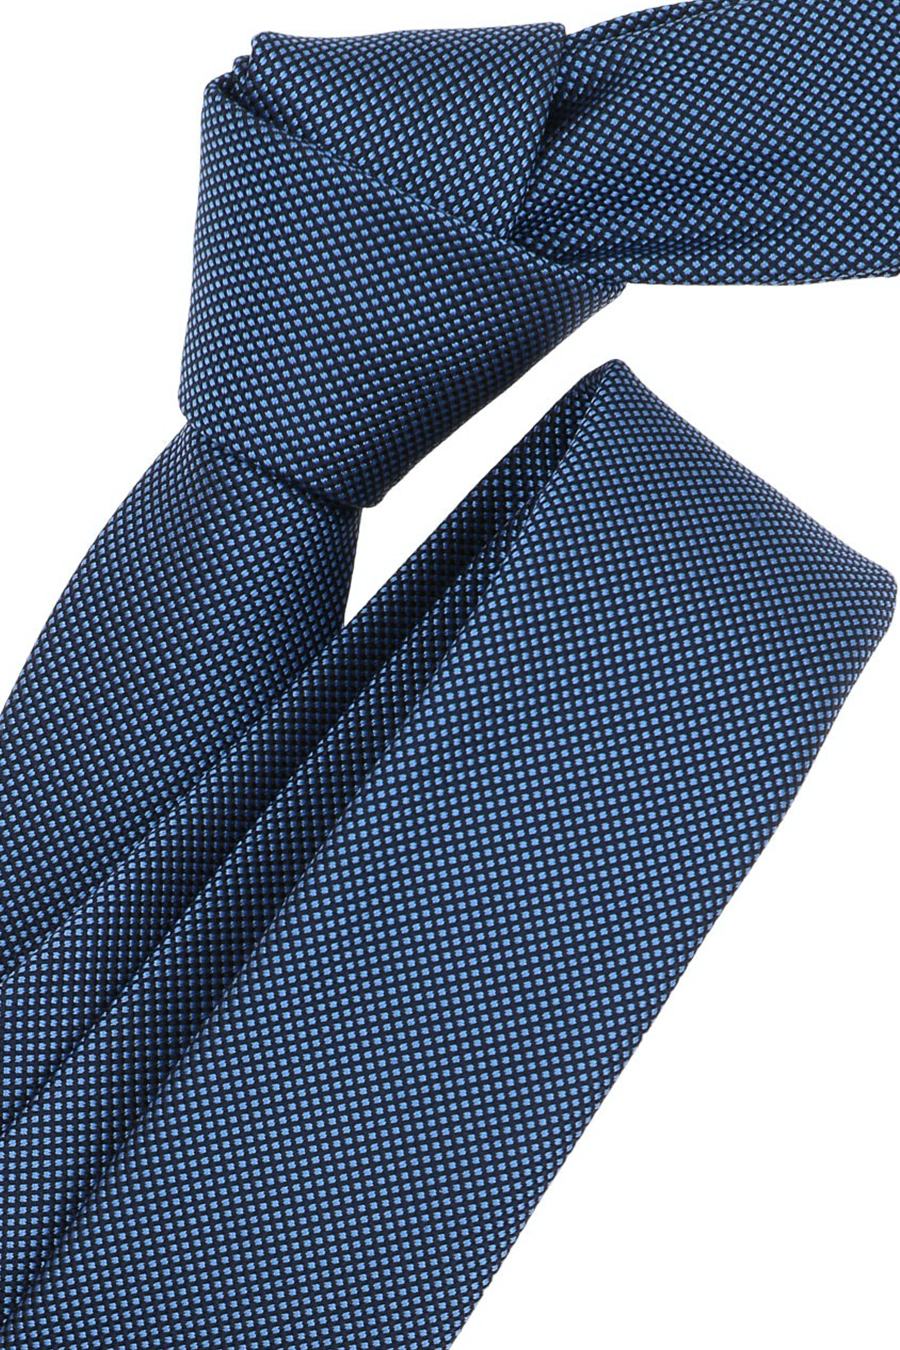 VENTI Krawatte aus Seide dunkelblau und Polyester Muster